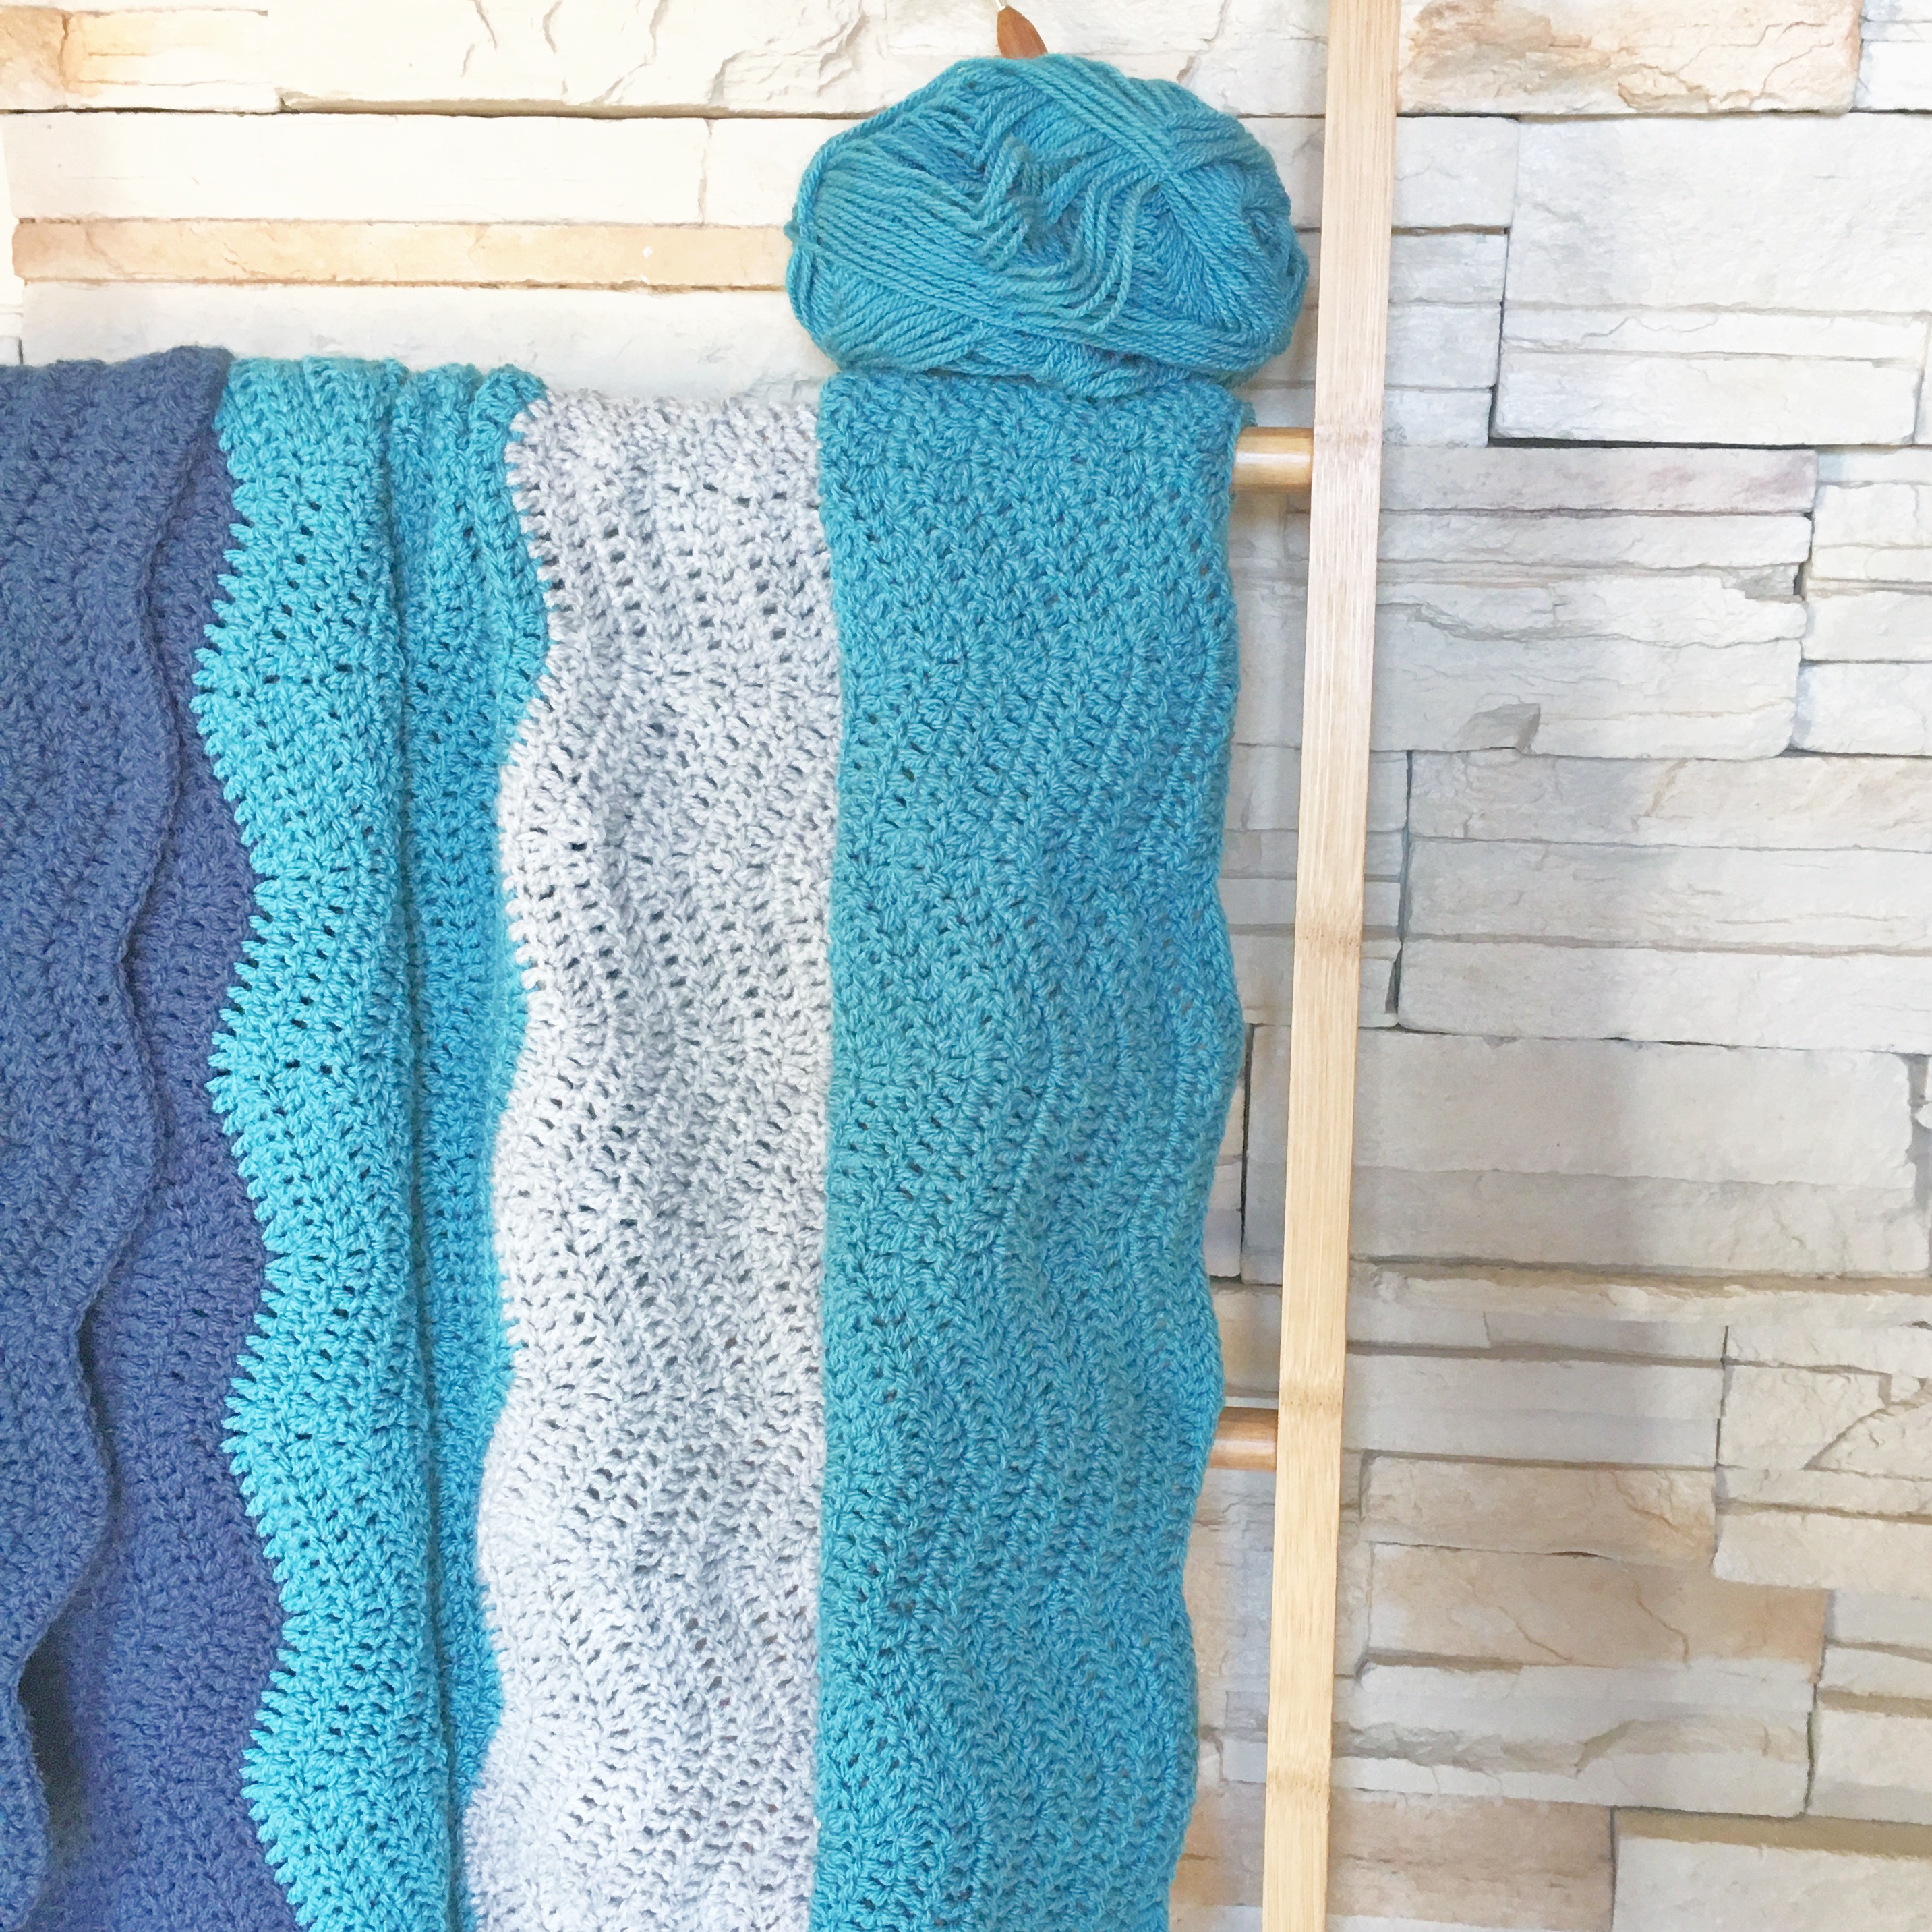 Learn to Crochet a Ripple Blanket